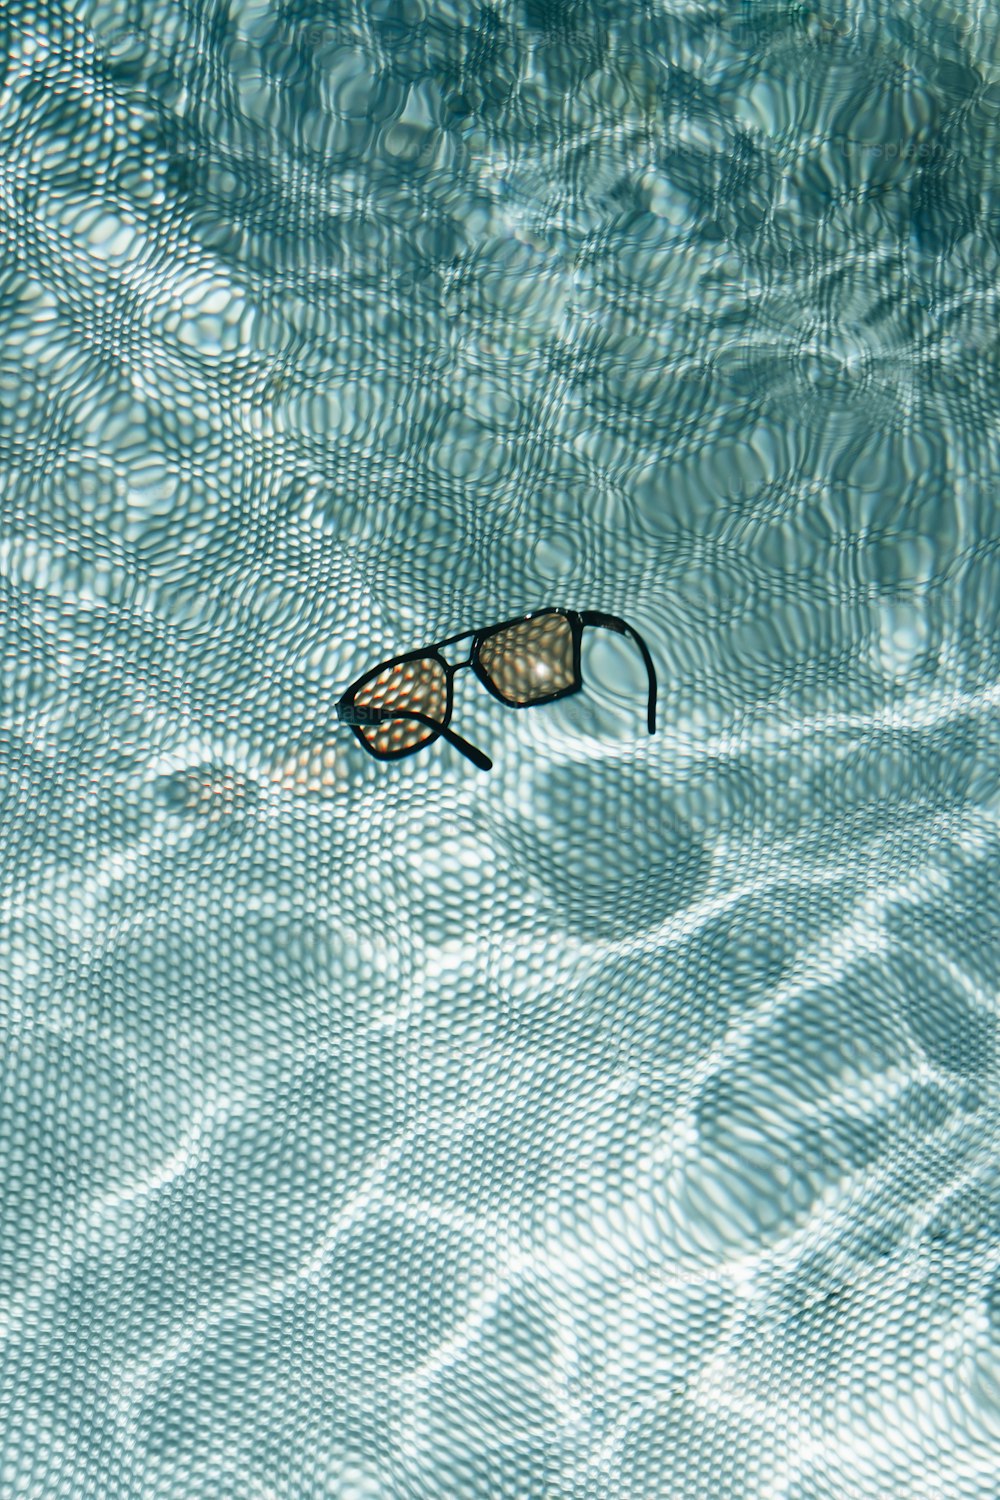 Un par de gafas de natación flotando en una piscina